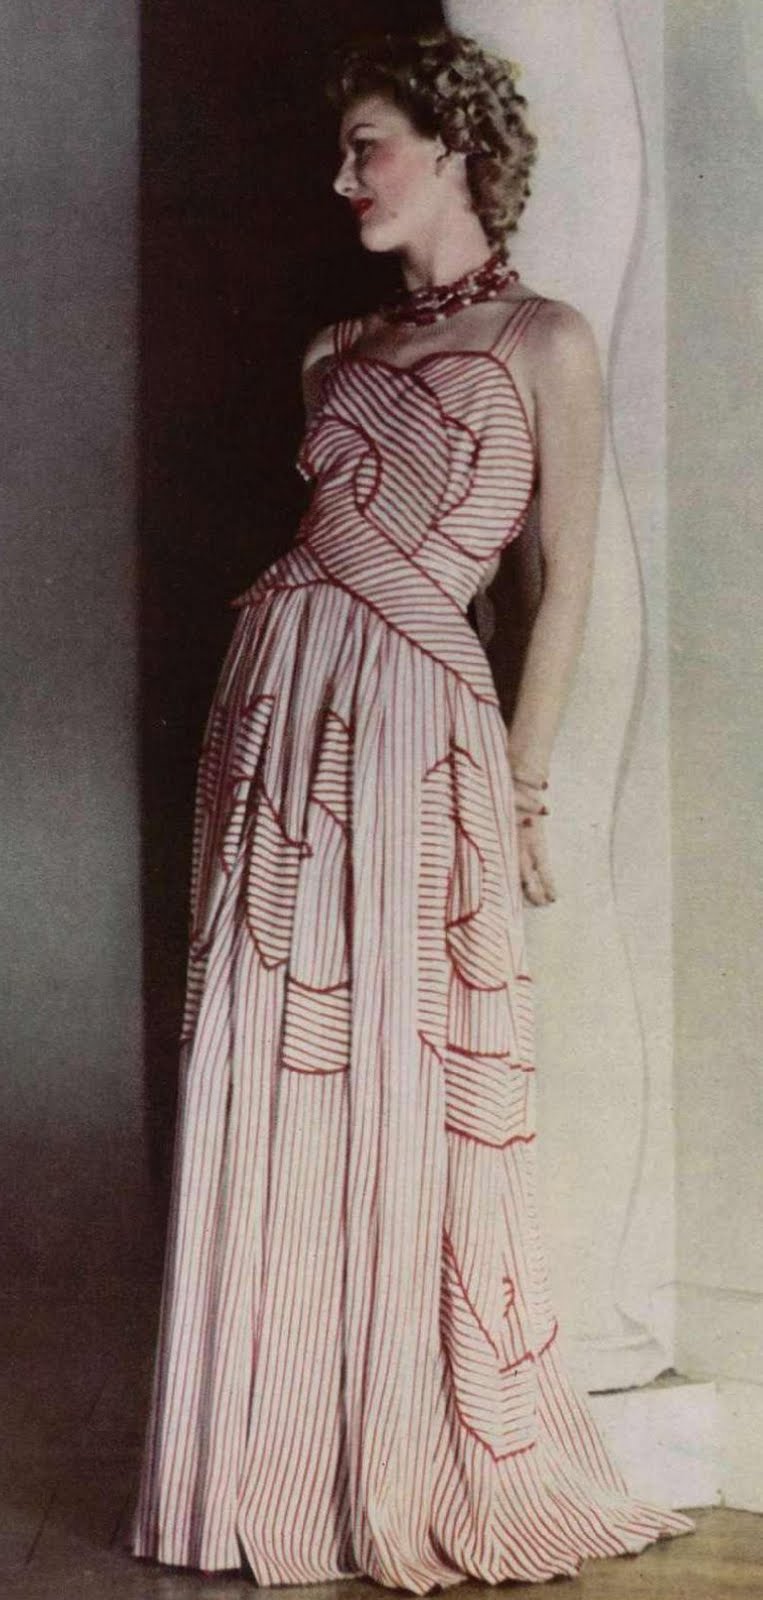 1940's Fashion - A Woman's Clothing Plan 1947 - Glamour Daze